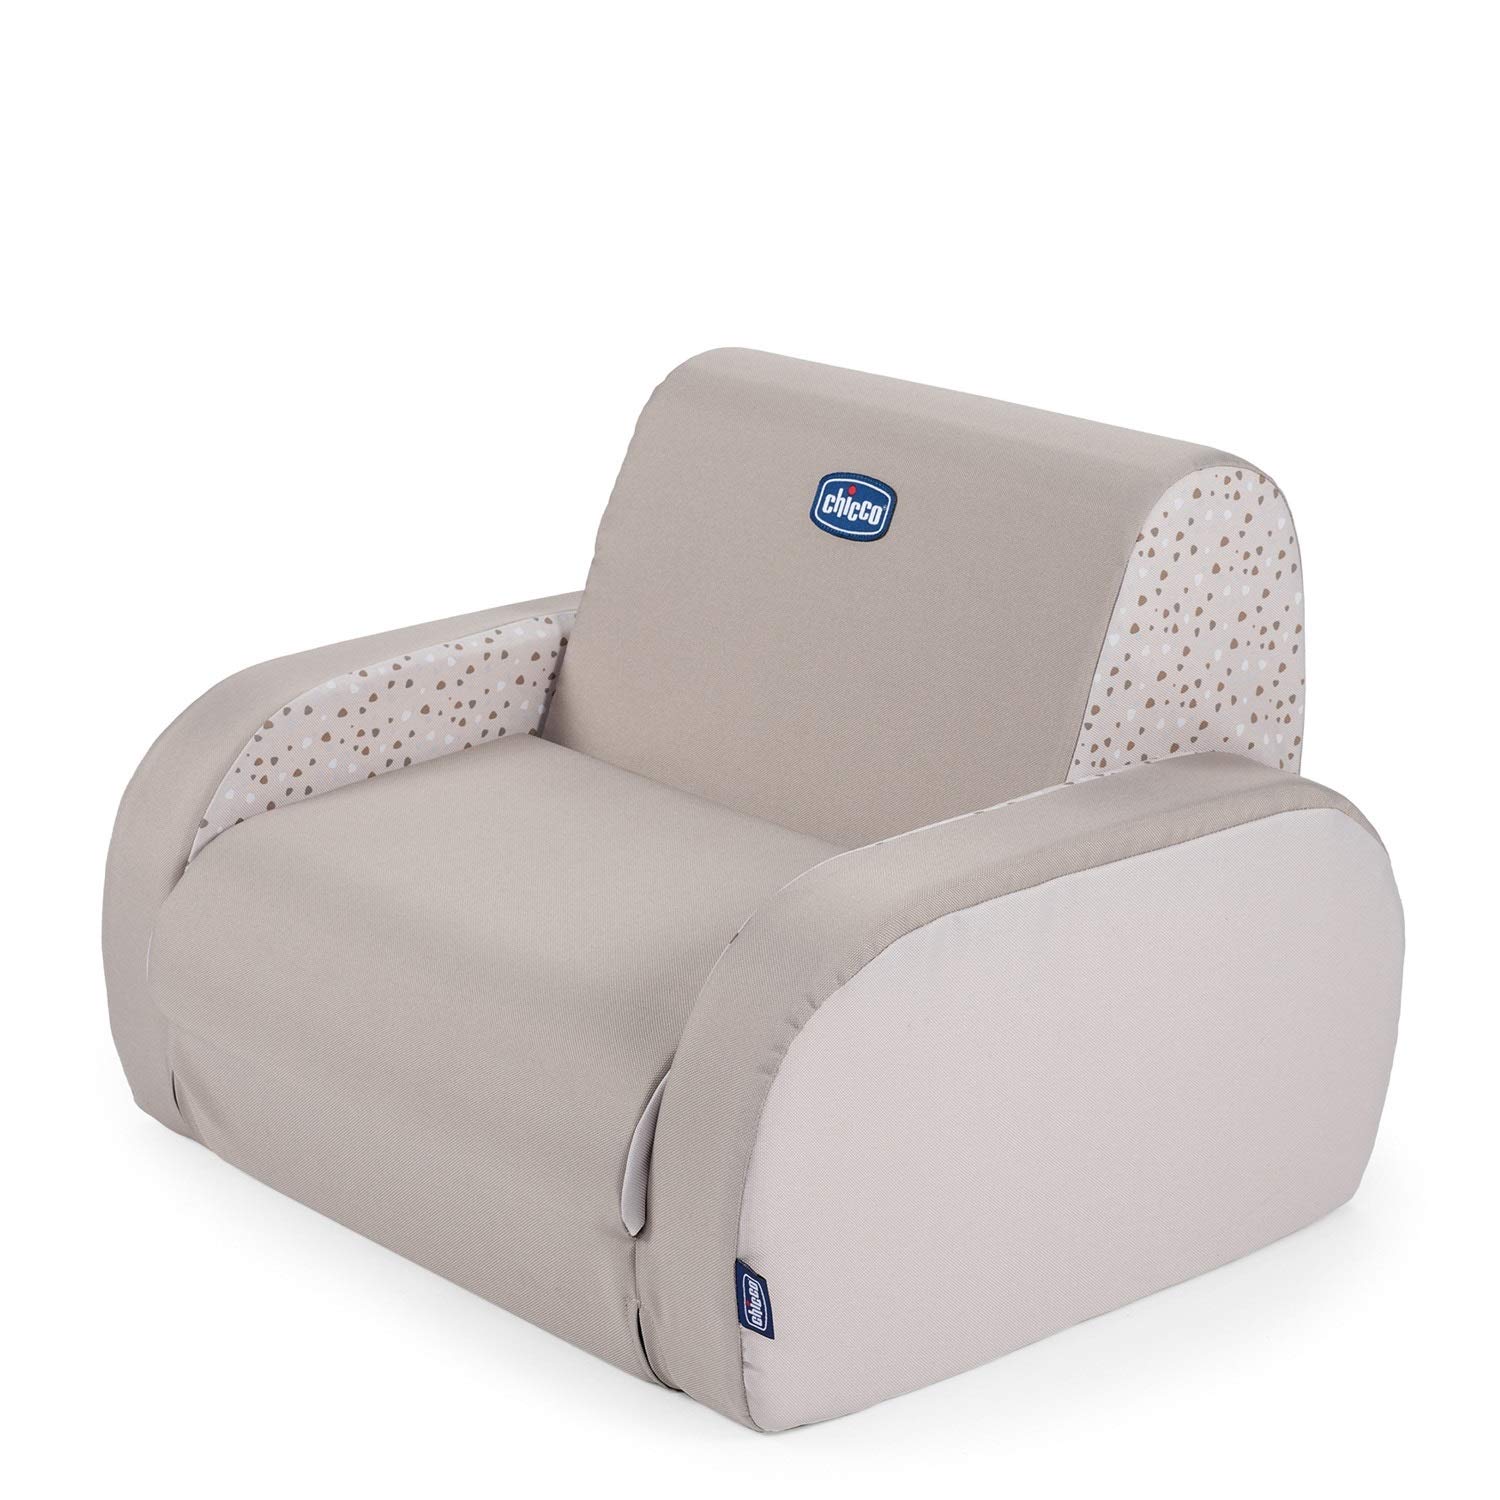 CHICCO BABYSESSEL TWIST Sitzfläche für 1 Kind, 3 Verwendungsmöglichkeiten: Couch, Longchair, Liege